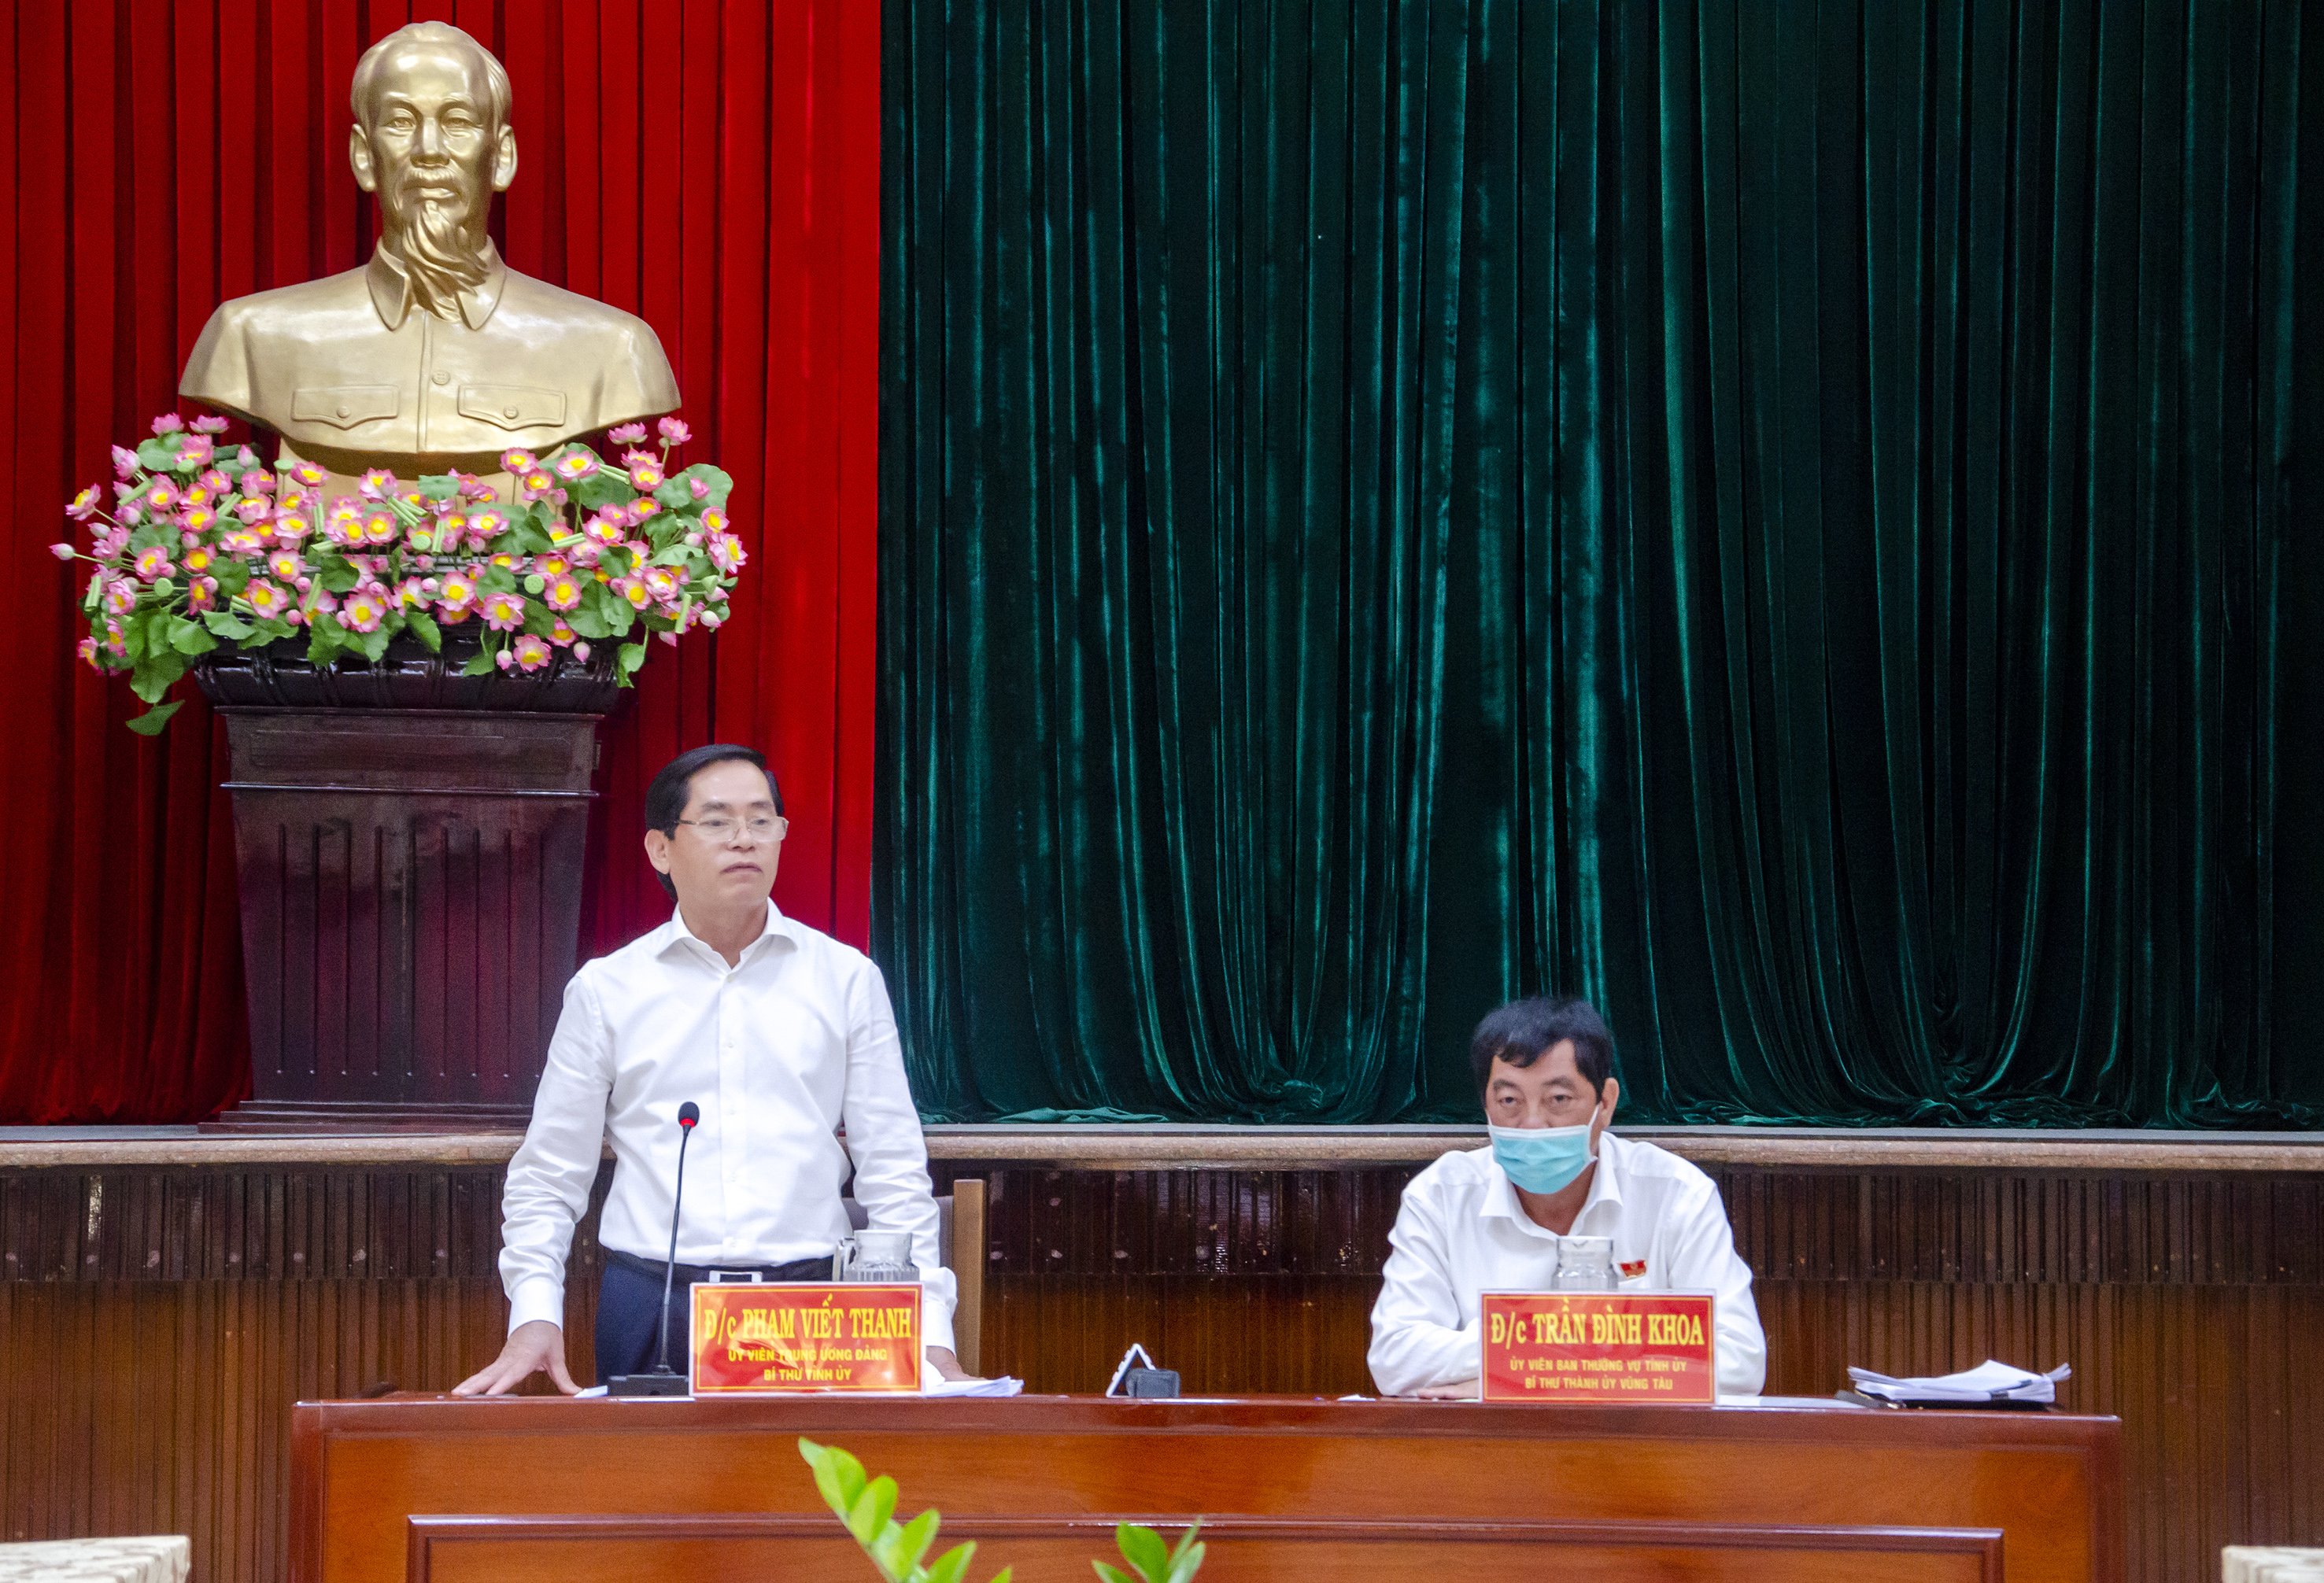 Ông Phạm Viết Thanh, Ủy viên Trung ương Đảng, Bí thư Tỉnh ủy, Chủ tịch HĐND tỉnh phát biểu kết luận buổi làm việc.